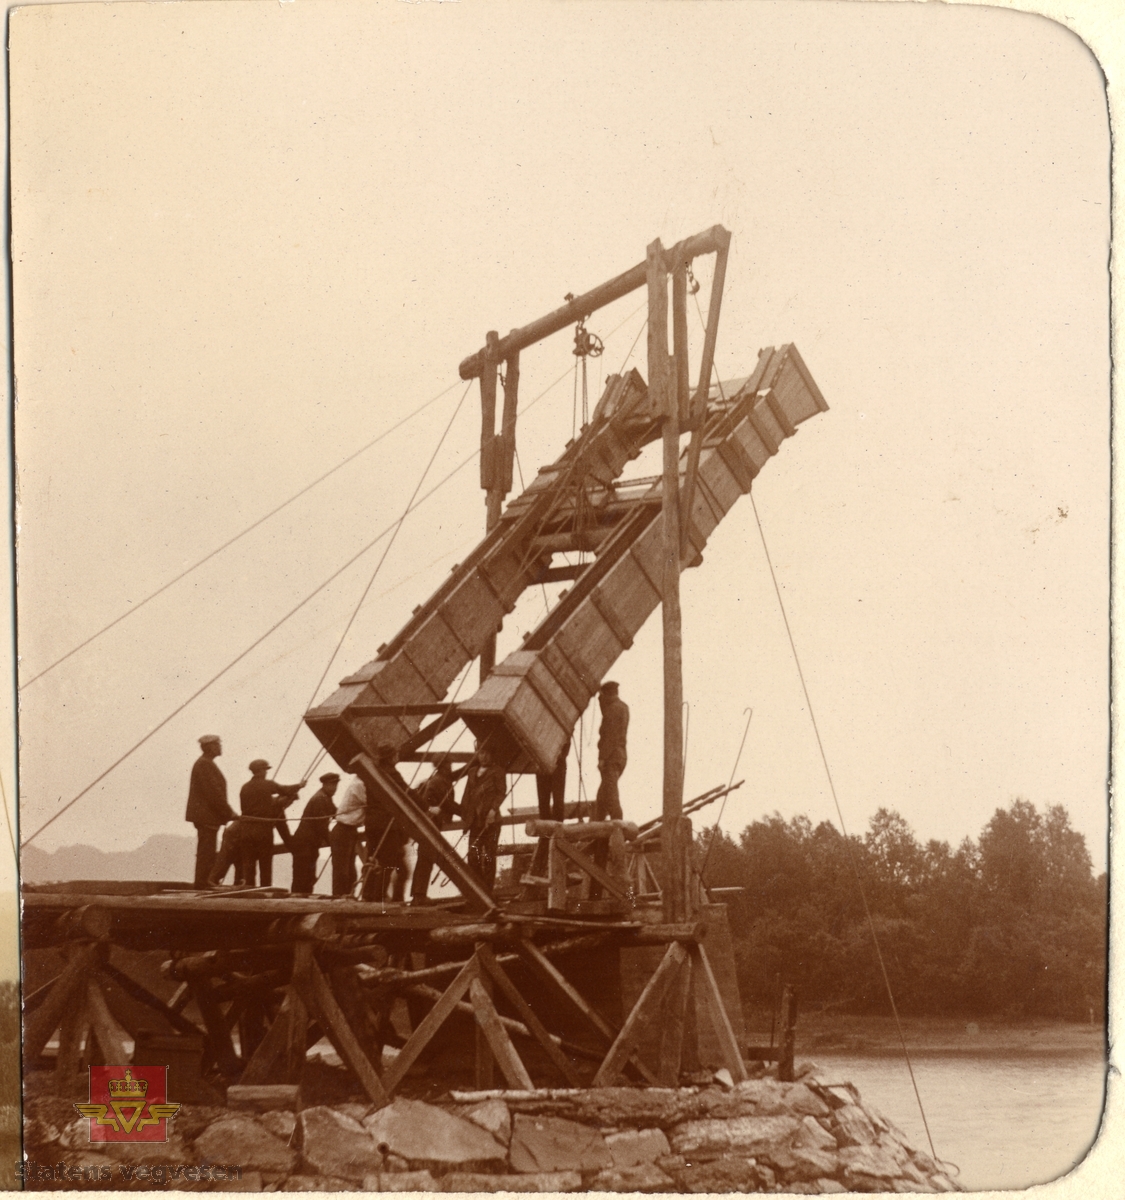 Øvre Salangen bru under bygging. Spennvidde er 54 meter. Bildet viser en gruppe menn i arbeid med brua. Heising av ferdige forskalingskasser til støping av brutårn. 1913 Øvre Salangen bro stod  på brutårnet da brua var ferdig.